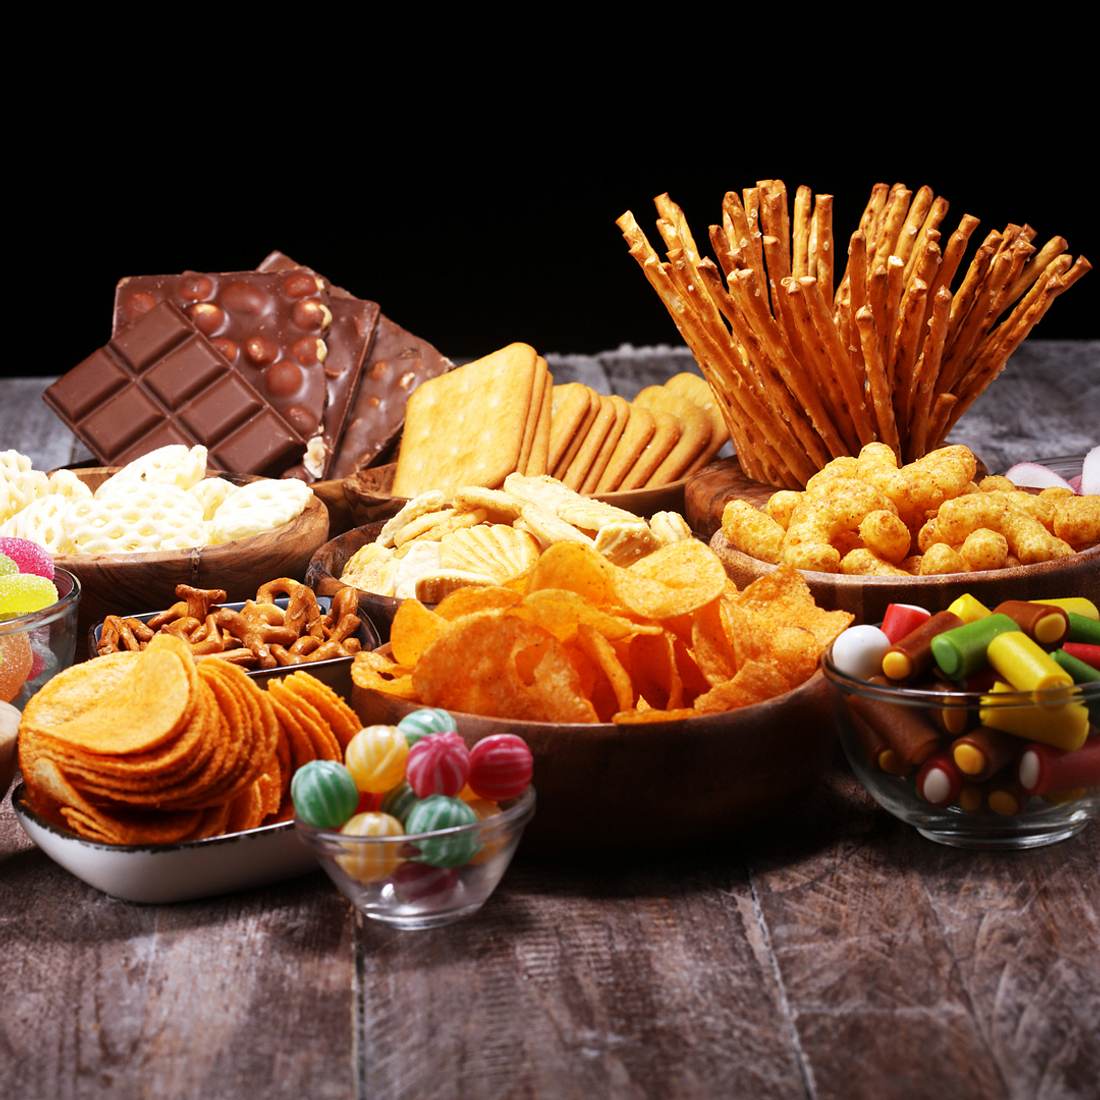 Schokolade, Chips, Käse: Was dein Lieblings-Snack über den Charakter verrät!